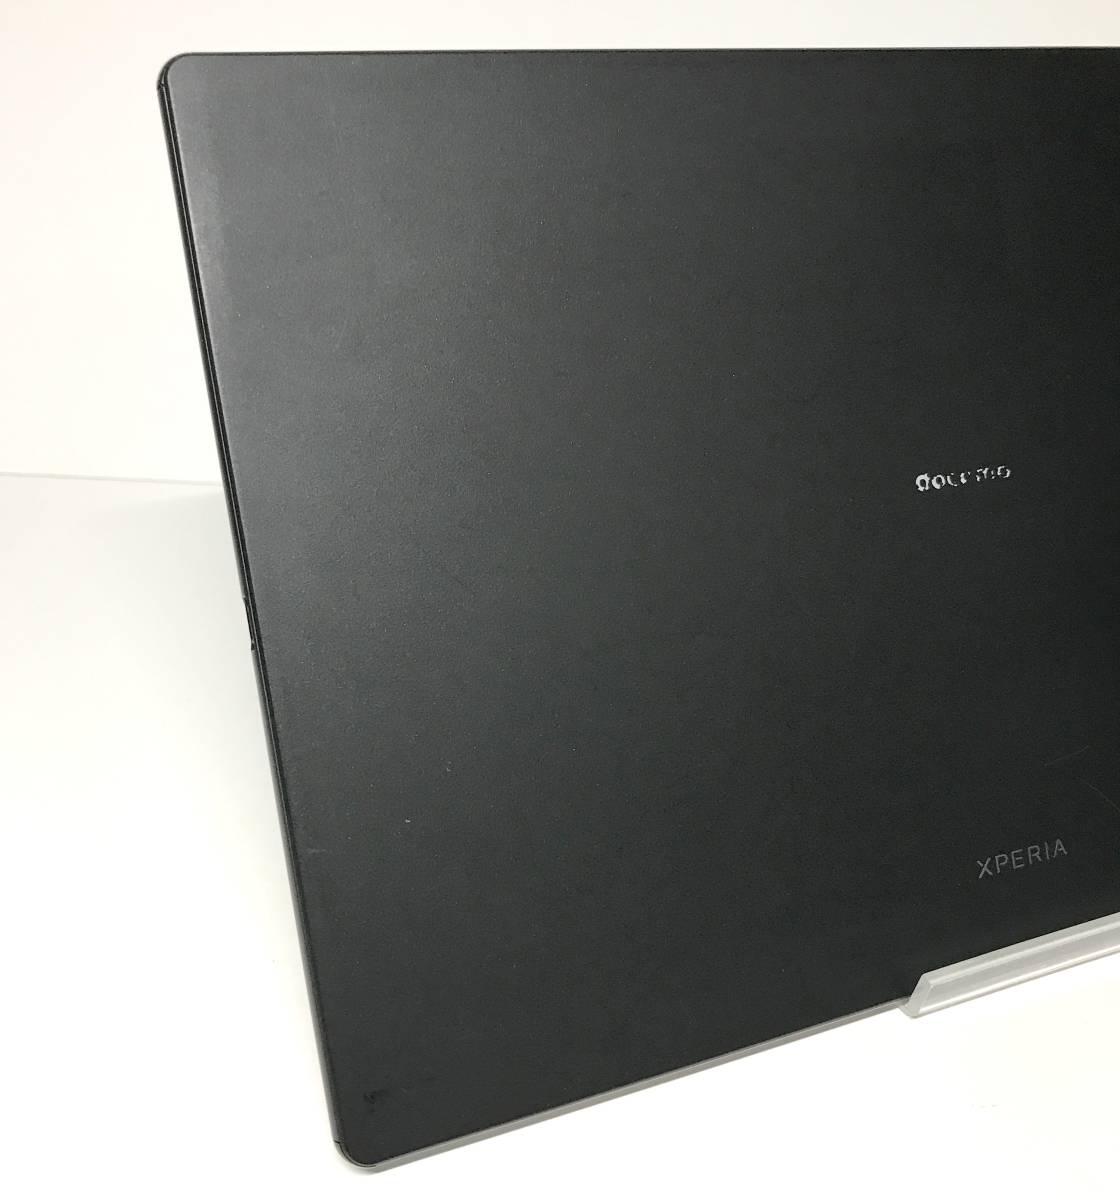  б/у хороший товар SONY Xperia Z4 Tablet docomo SO-05G черный SIM разблокирован 10.1 дюймовый 7.0